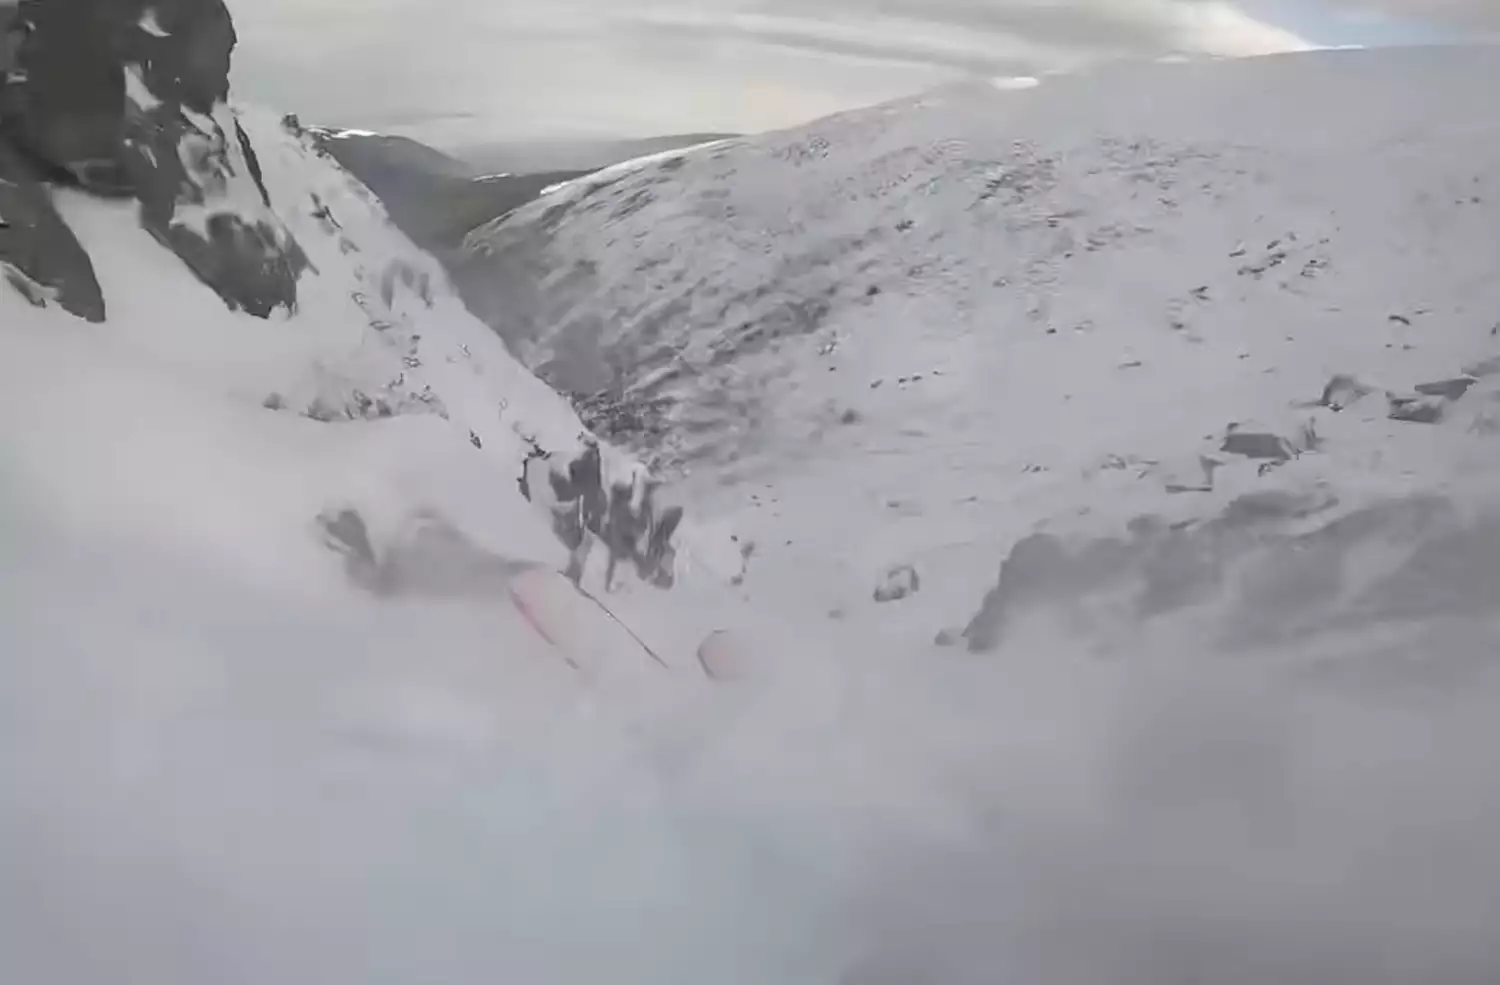 Η τρομακτική στιγμή που σκιέρ παρασύρεται από χιονοστιβάδα στο Mount Washington (βίντεο)